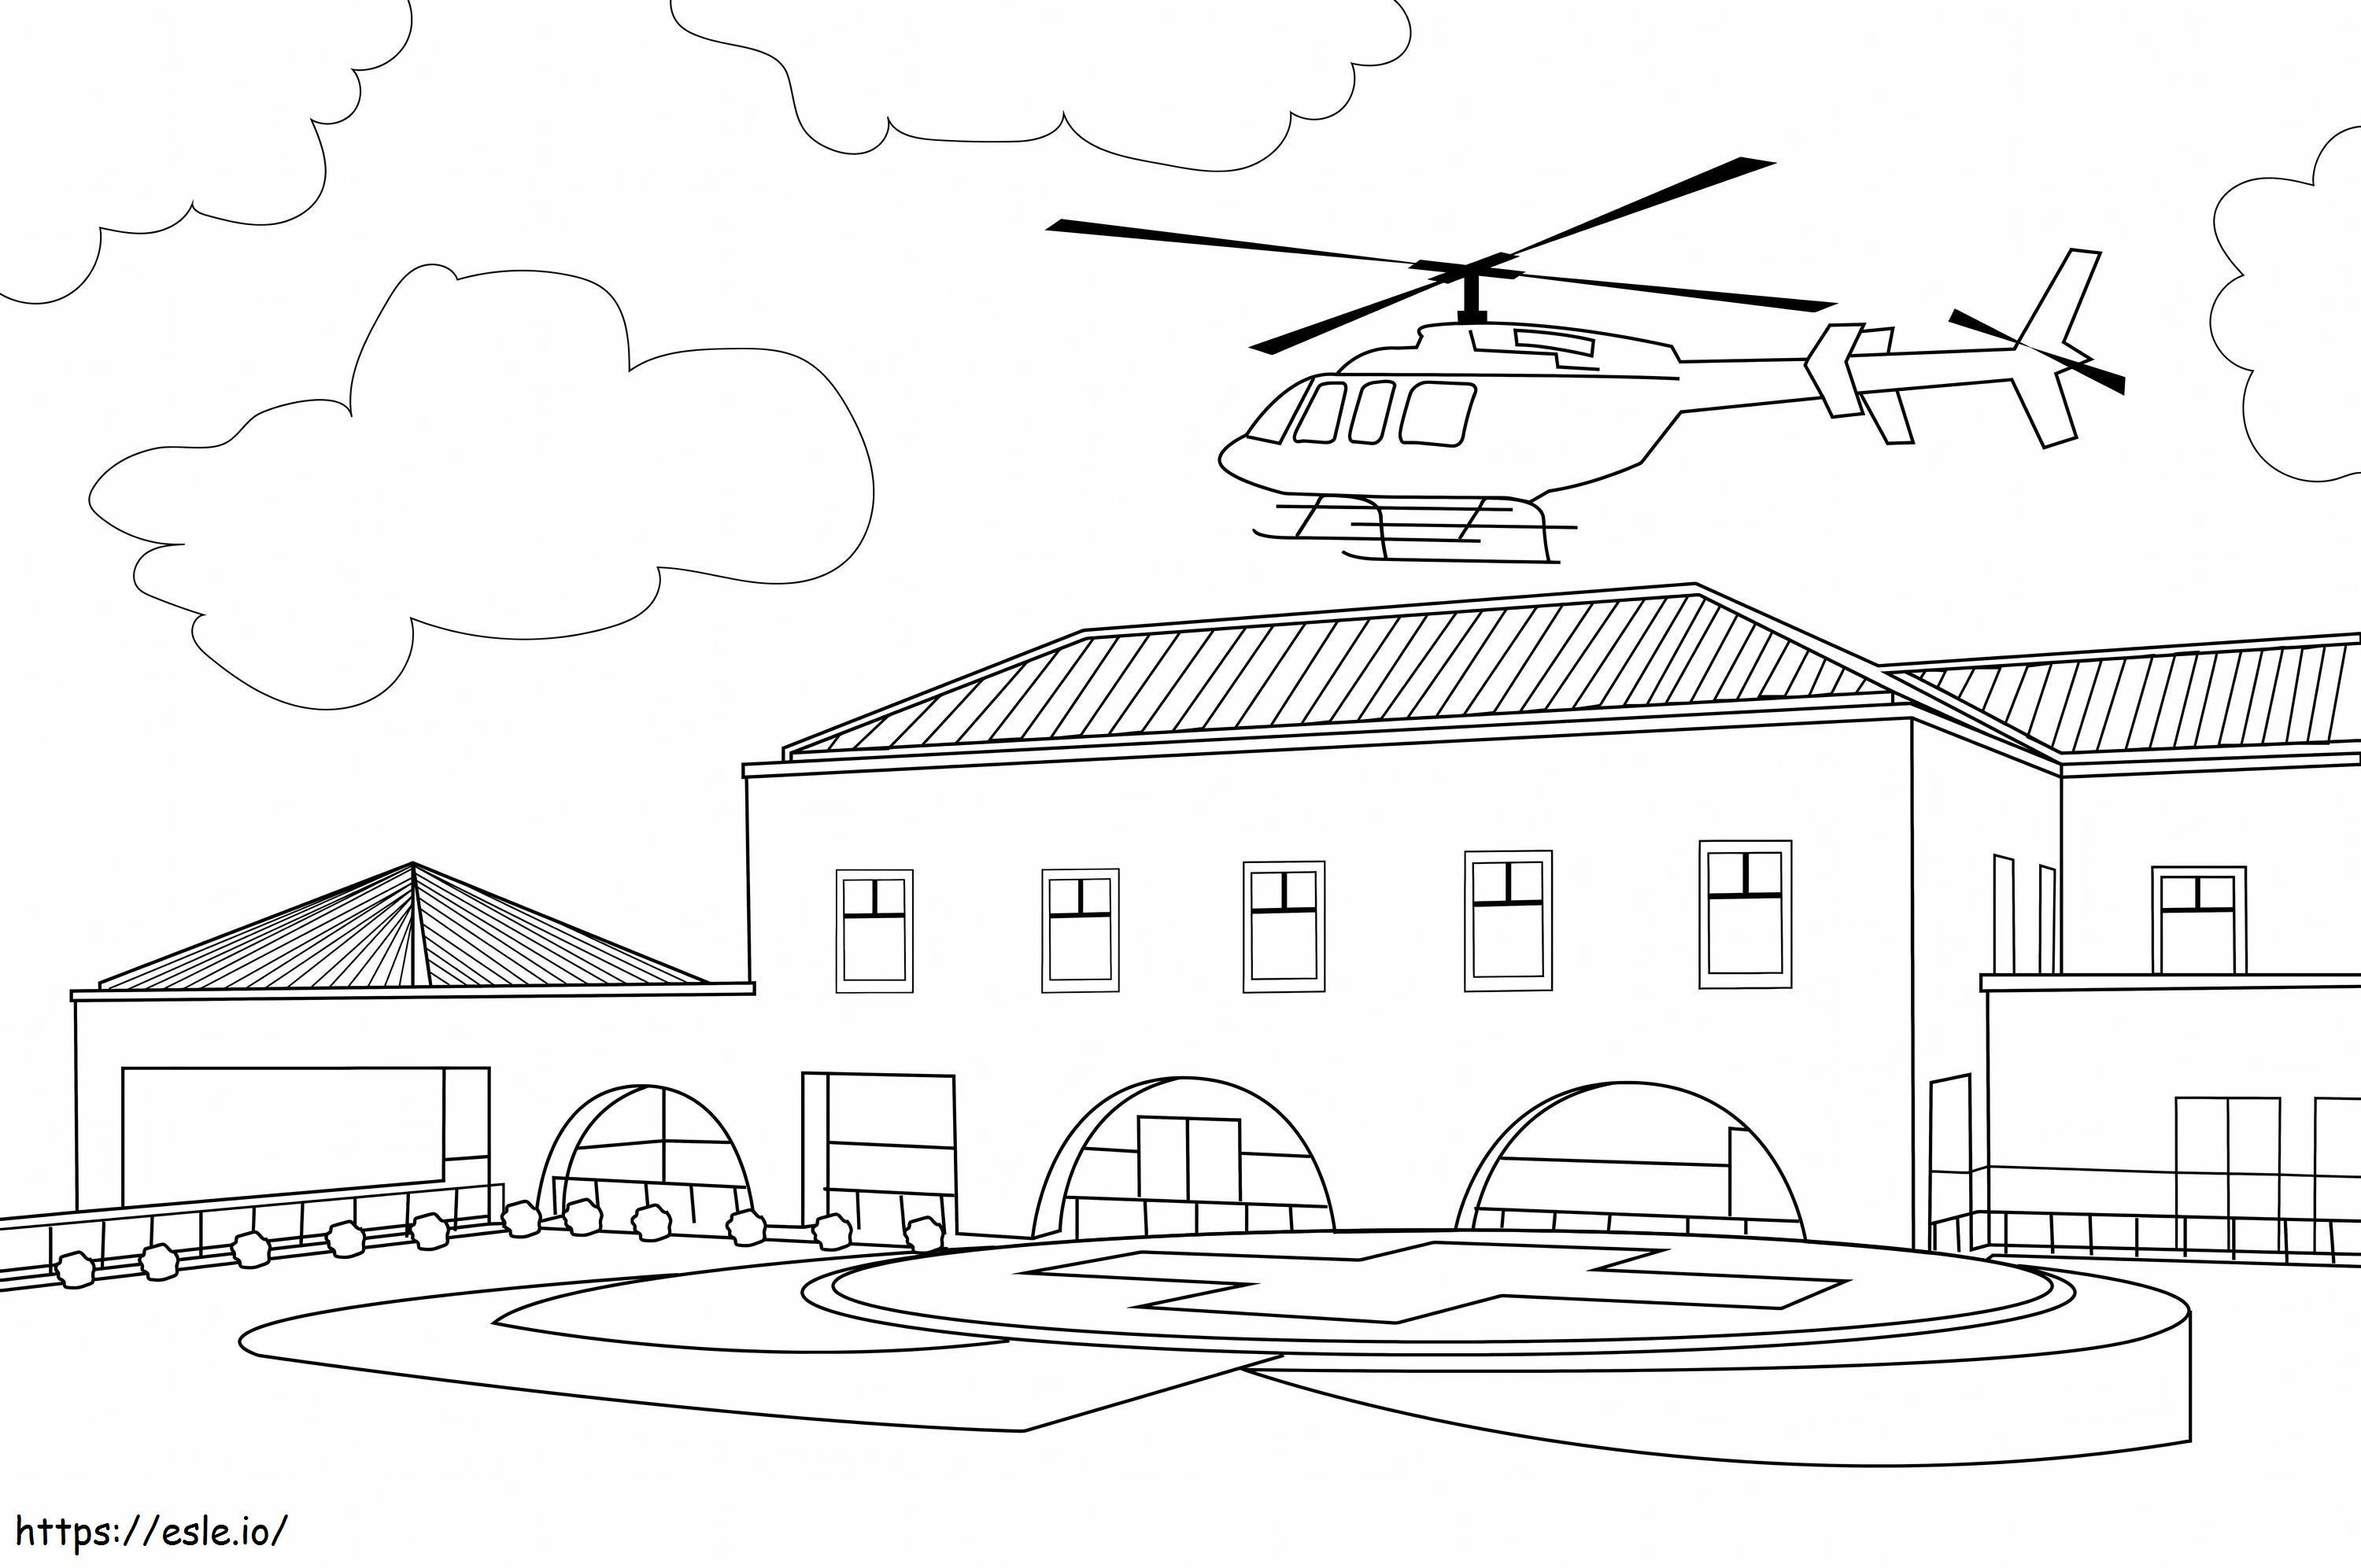 Hubschrauber im Villa-Gebäude skaliert ausmalbilder